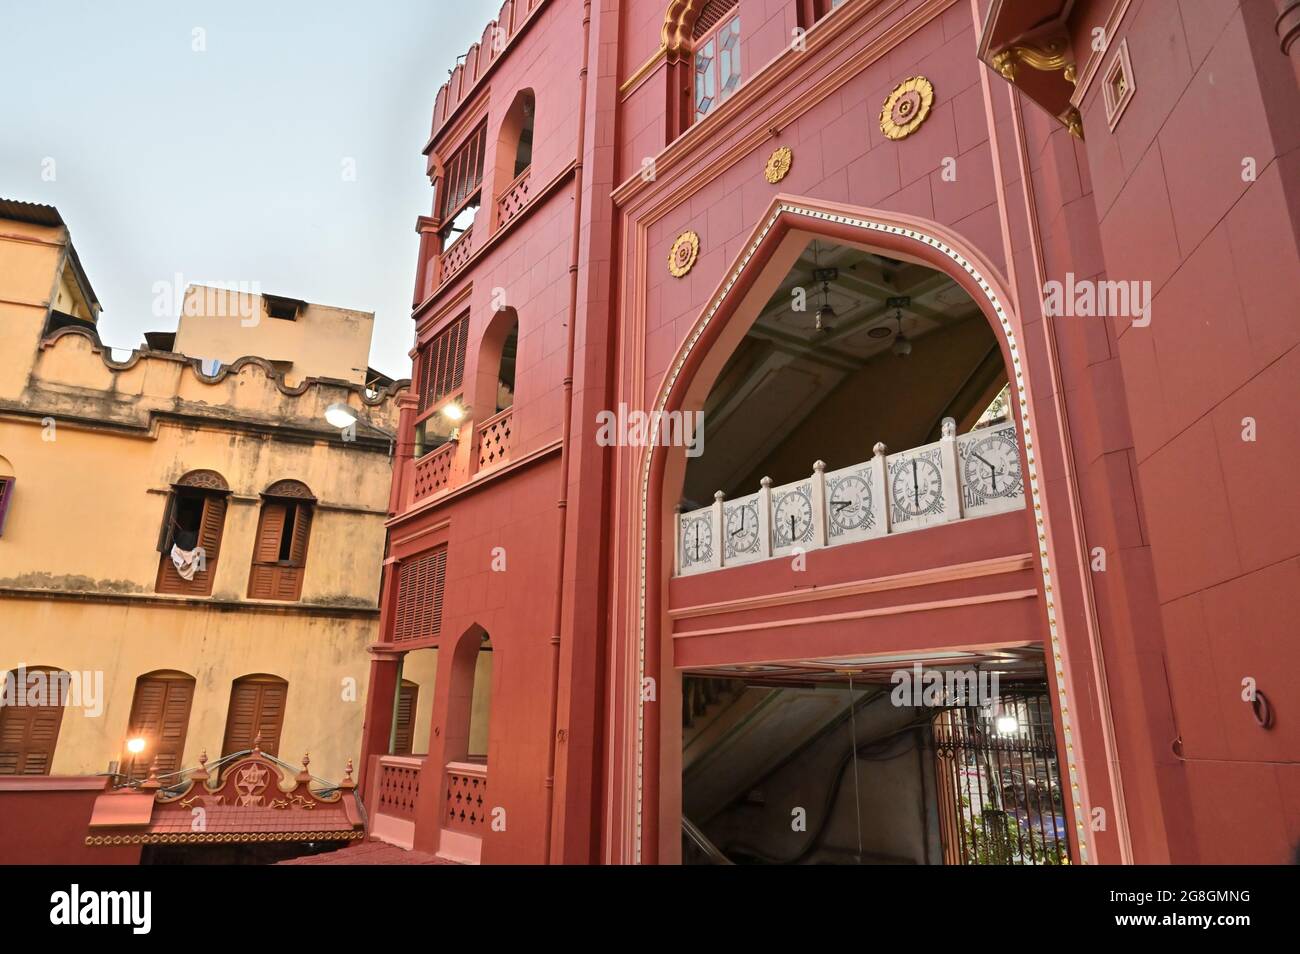 Belle architecture rouge de Nakhoda Mashid dans le centre de Kolkata. Cet endroit est célèbre pour le rassemblement de la communauté musulmane pour la célébration d'Eid. Banque D'Images